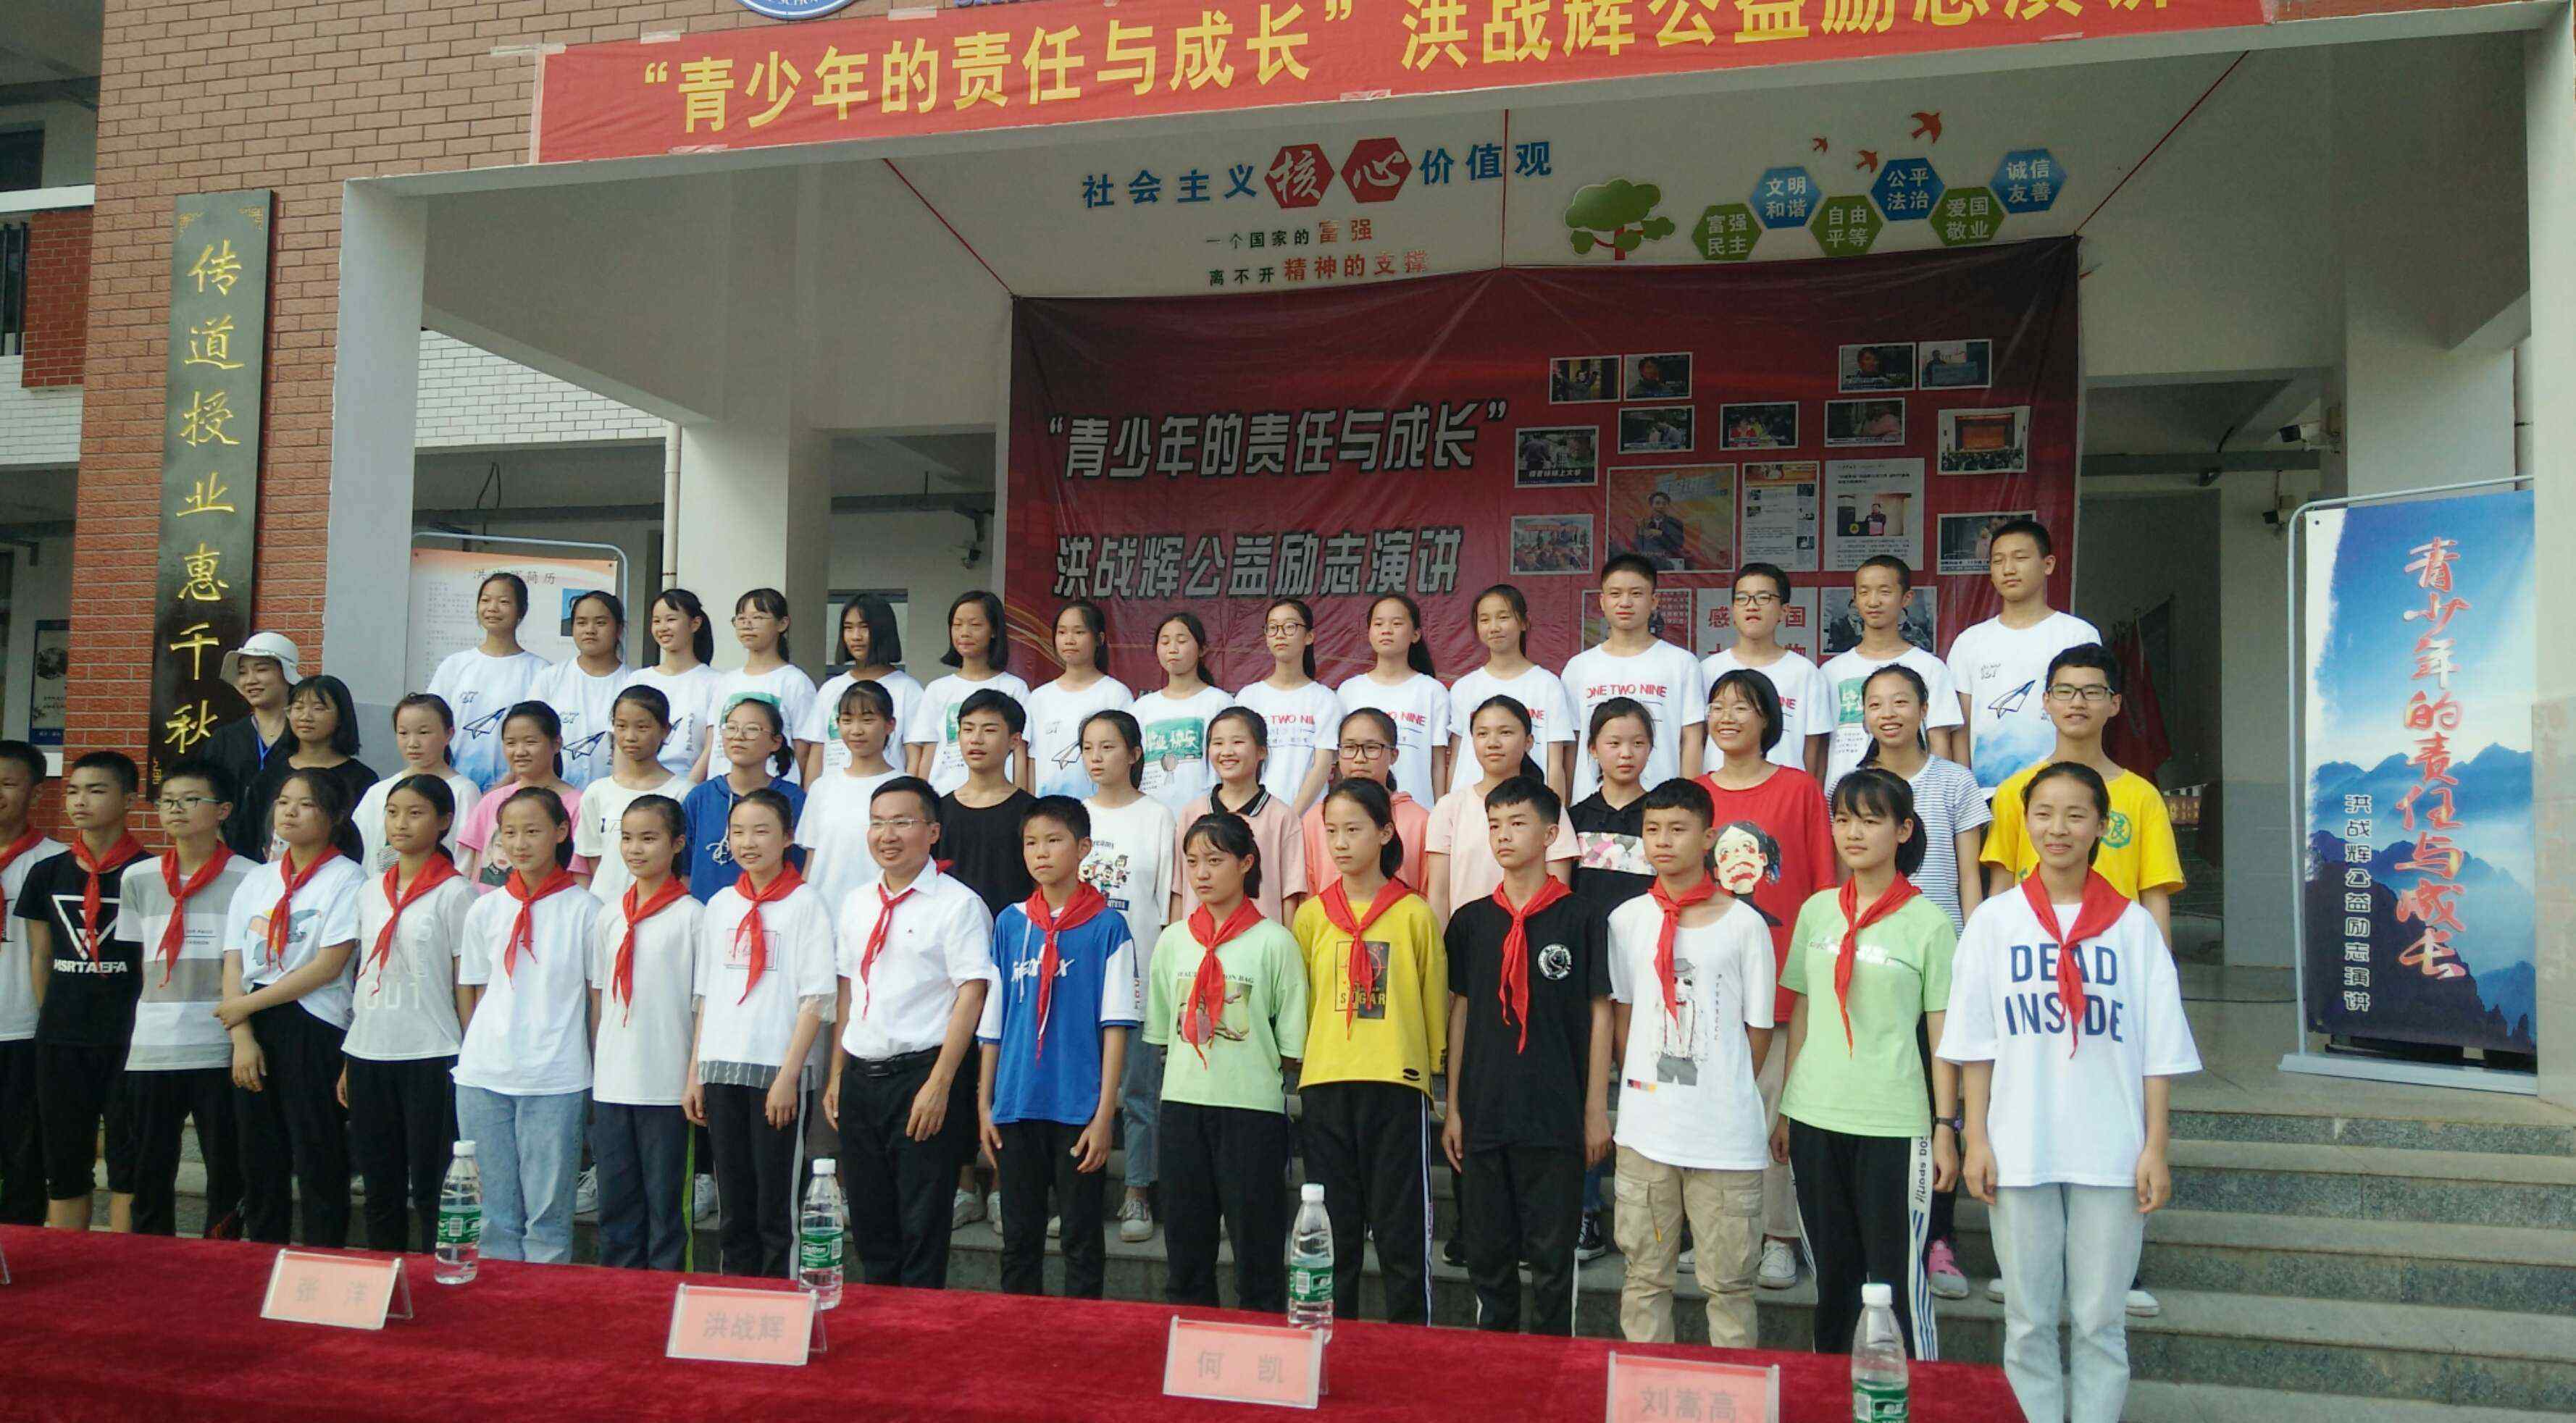 洪战辉 感动中国十大人物洪战辉在平江县三和中学的公益励志演讲